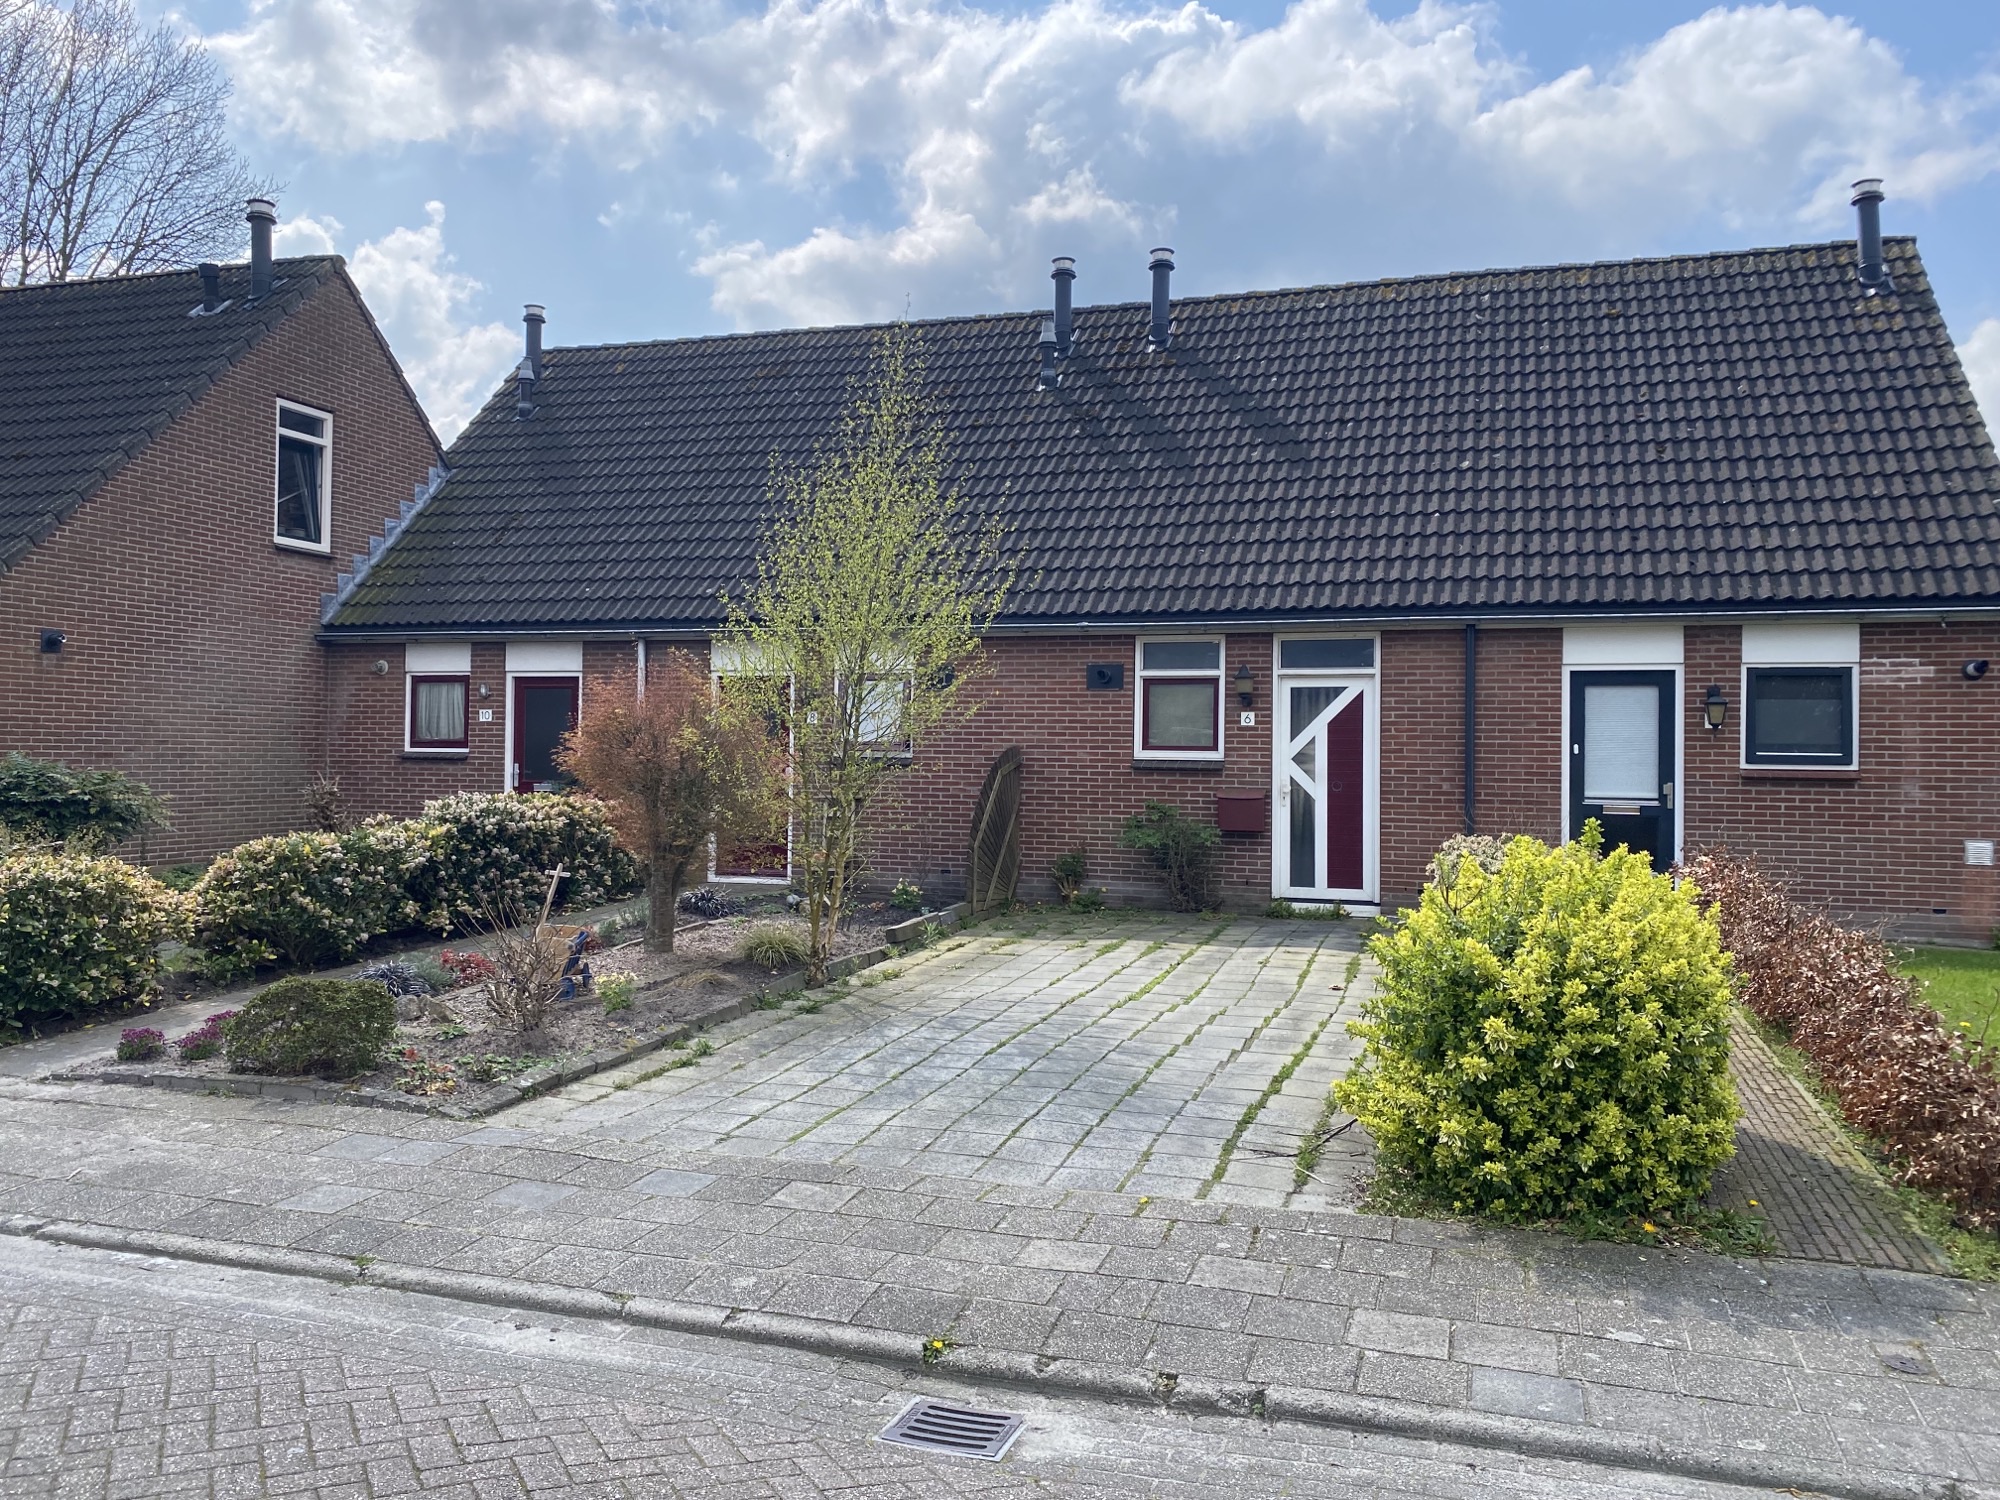 Veldhuizenstraat 10, 7741 PT Coevorden, Nederland